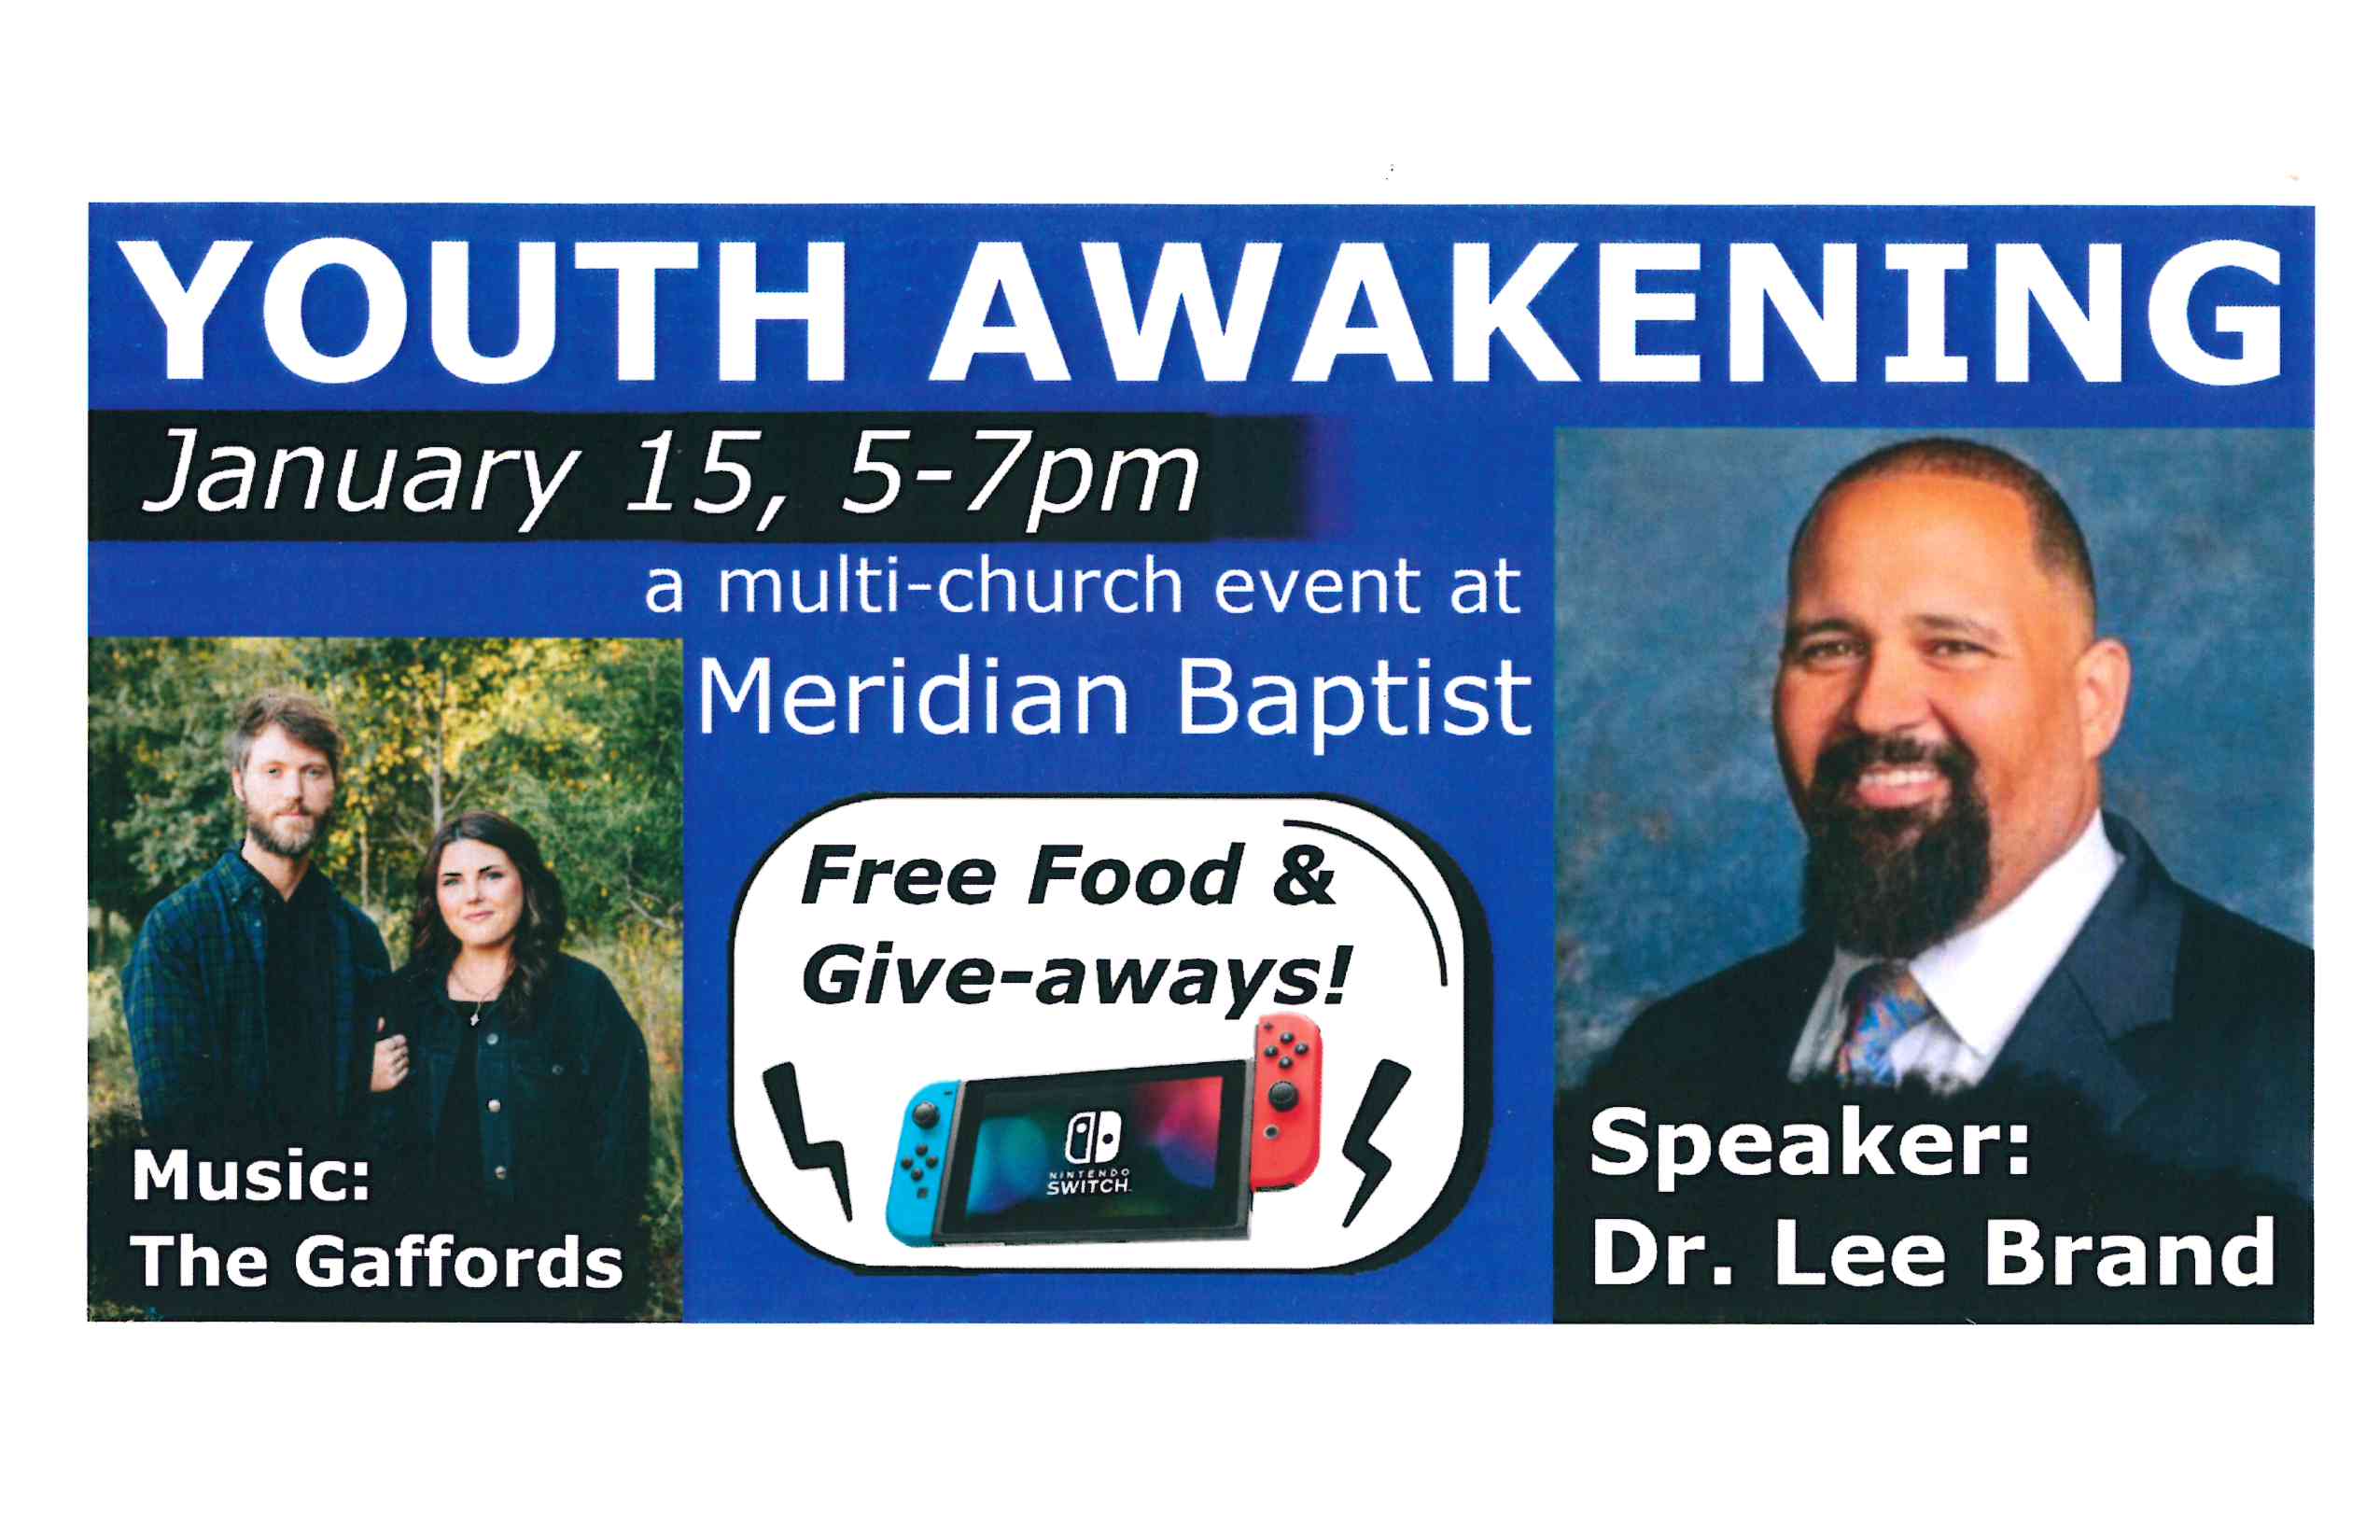 Youth Awakening on January 15